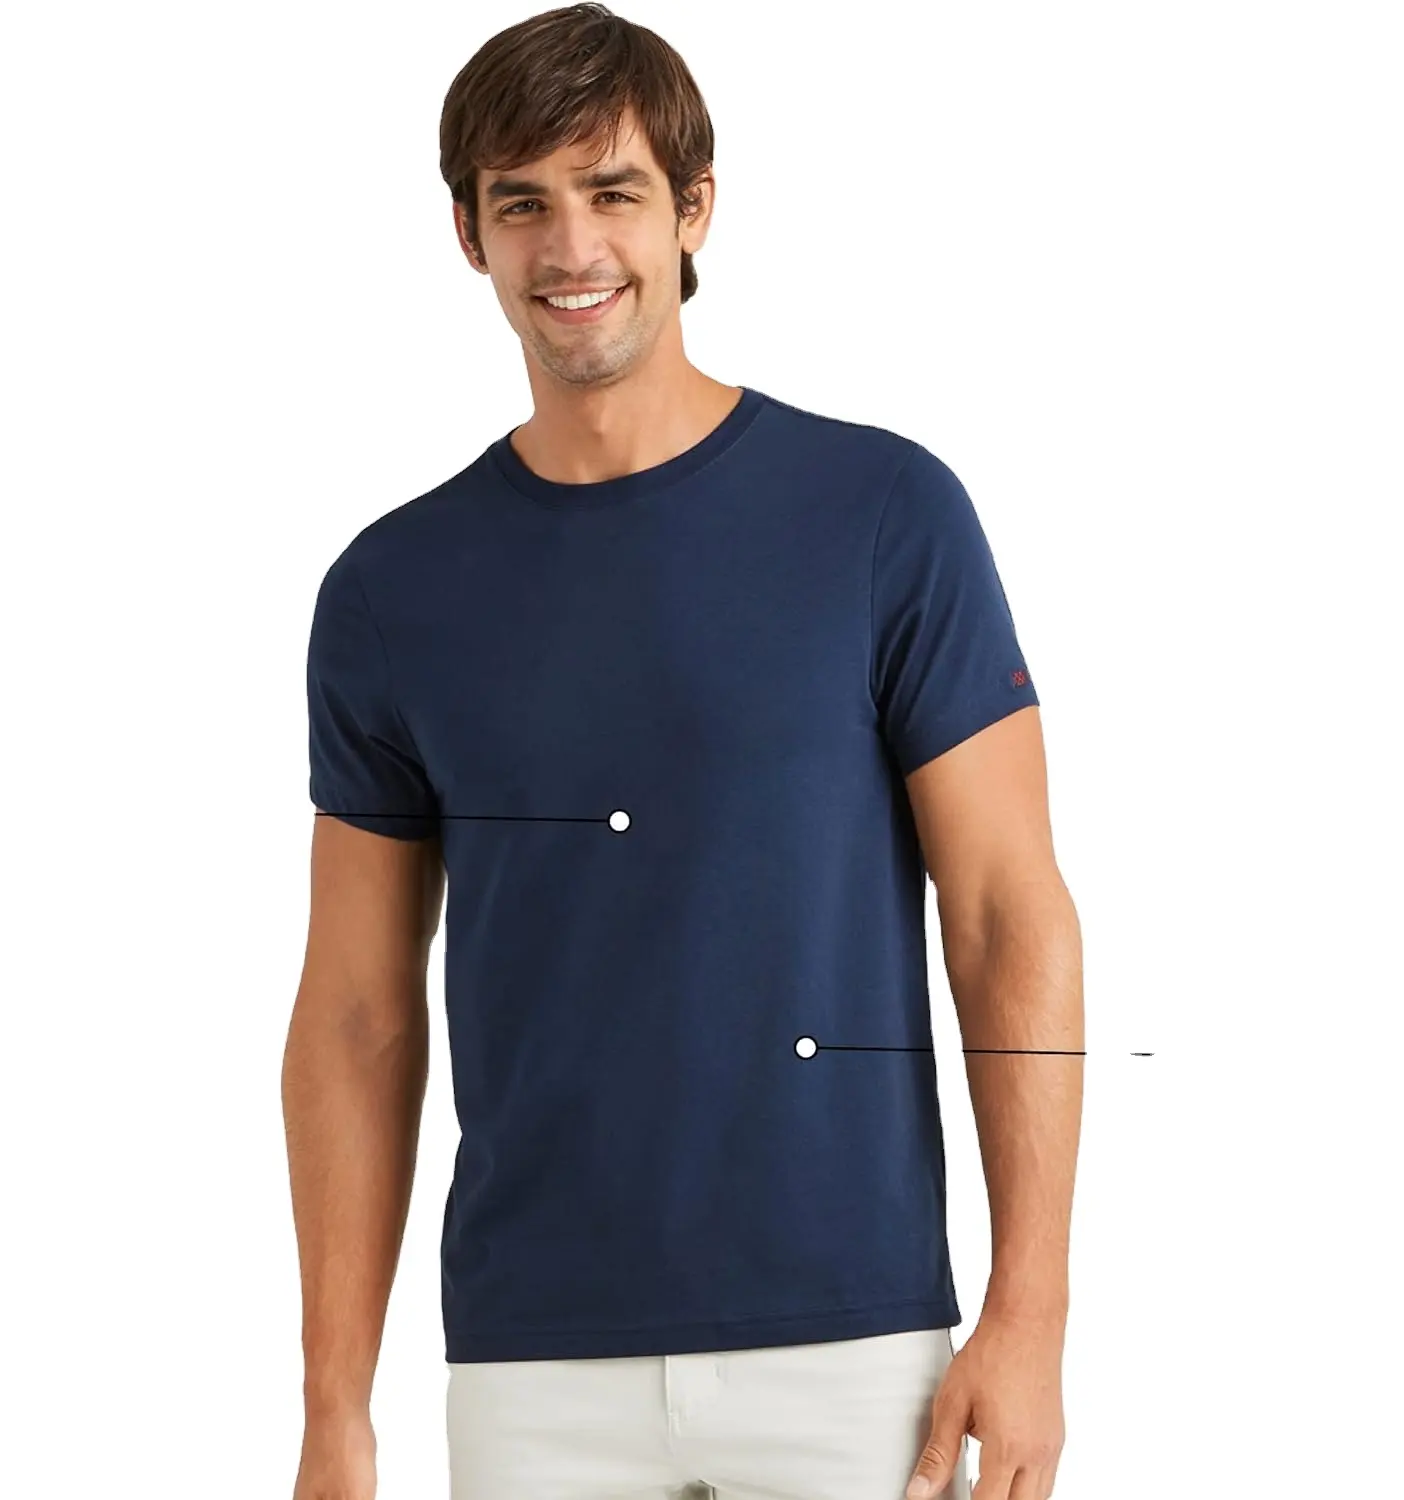 T-Shirts Van Topkwaliteit: Verken De Collectie Kruiswerk